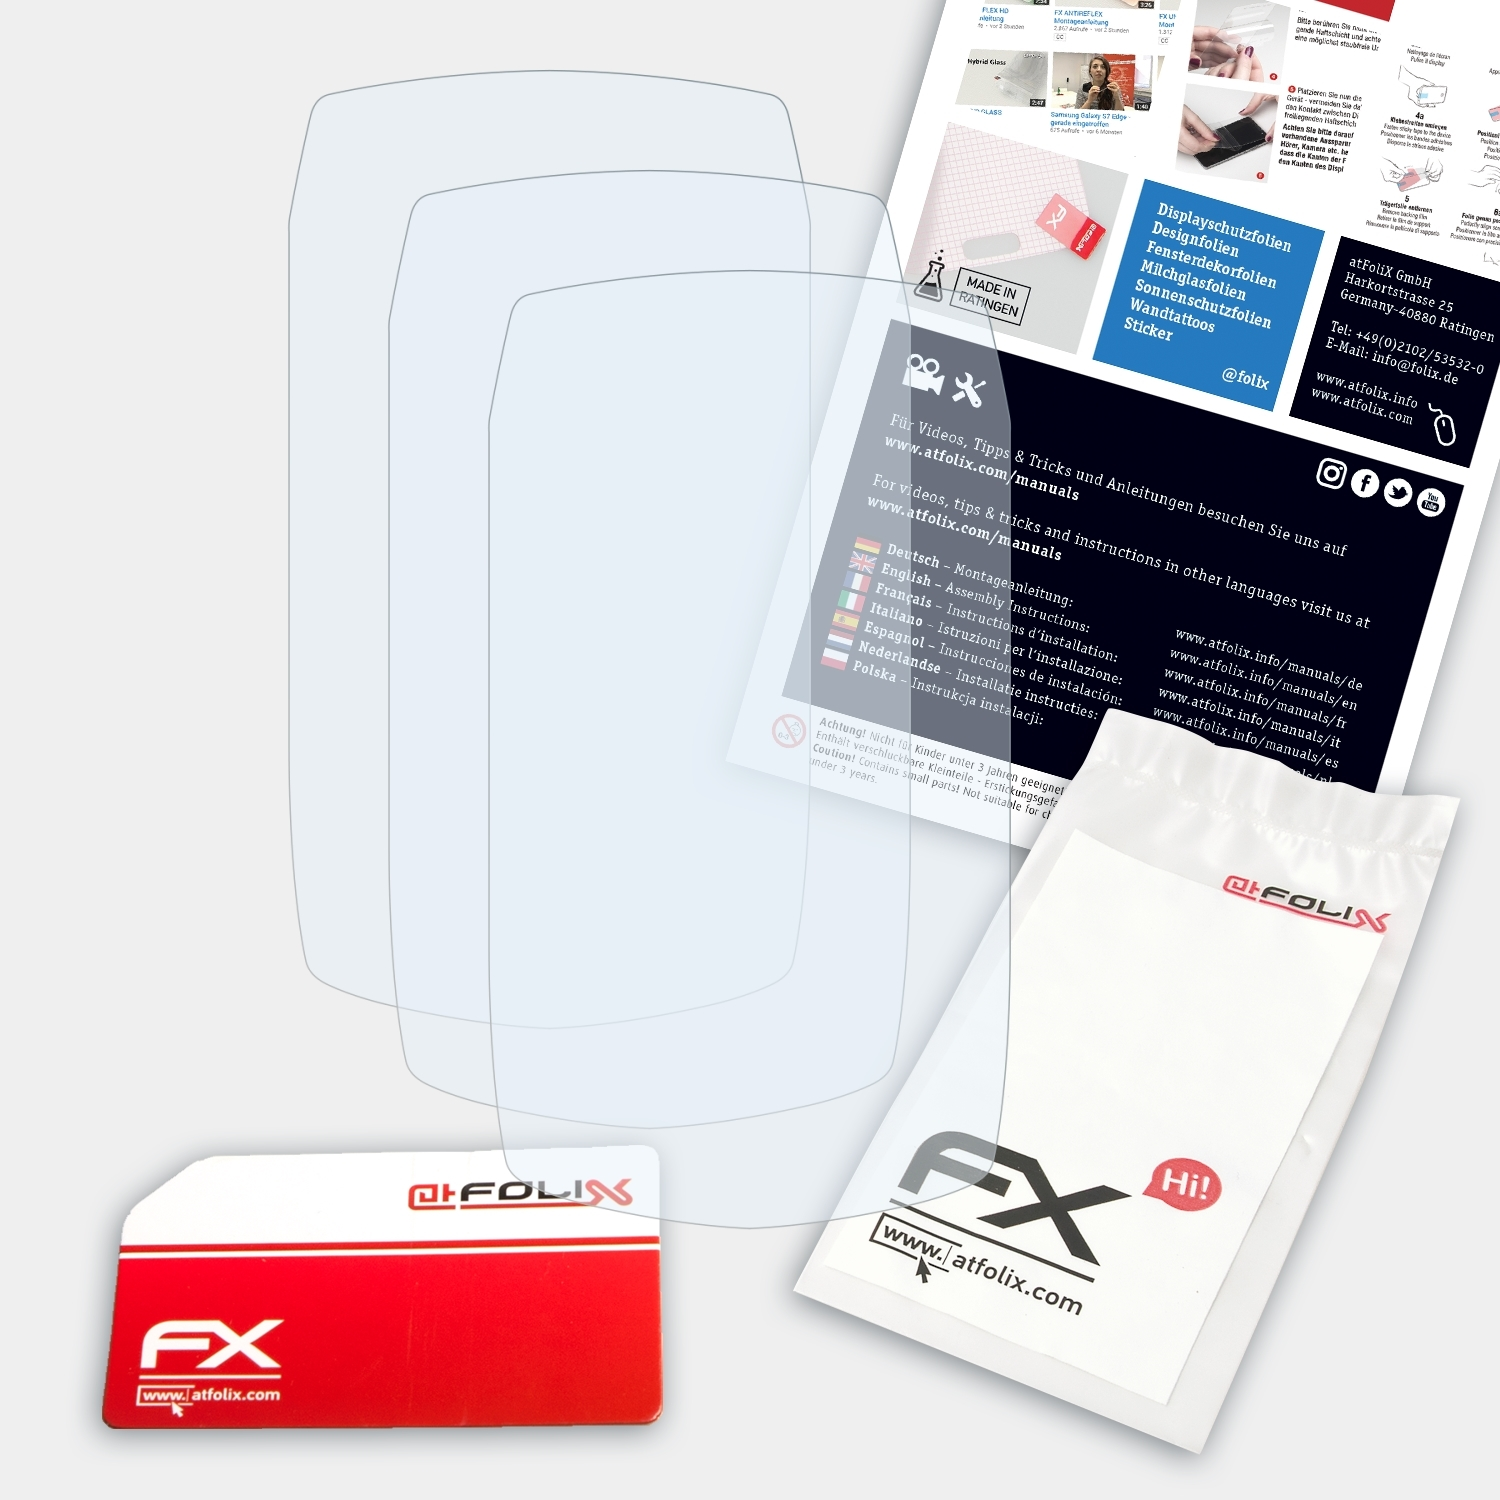 ATFOLIX 3x FX-Clear Displayschutz(für Teasi One4)